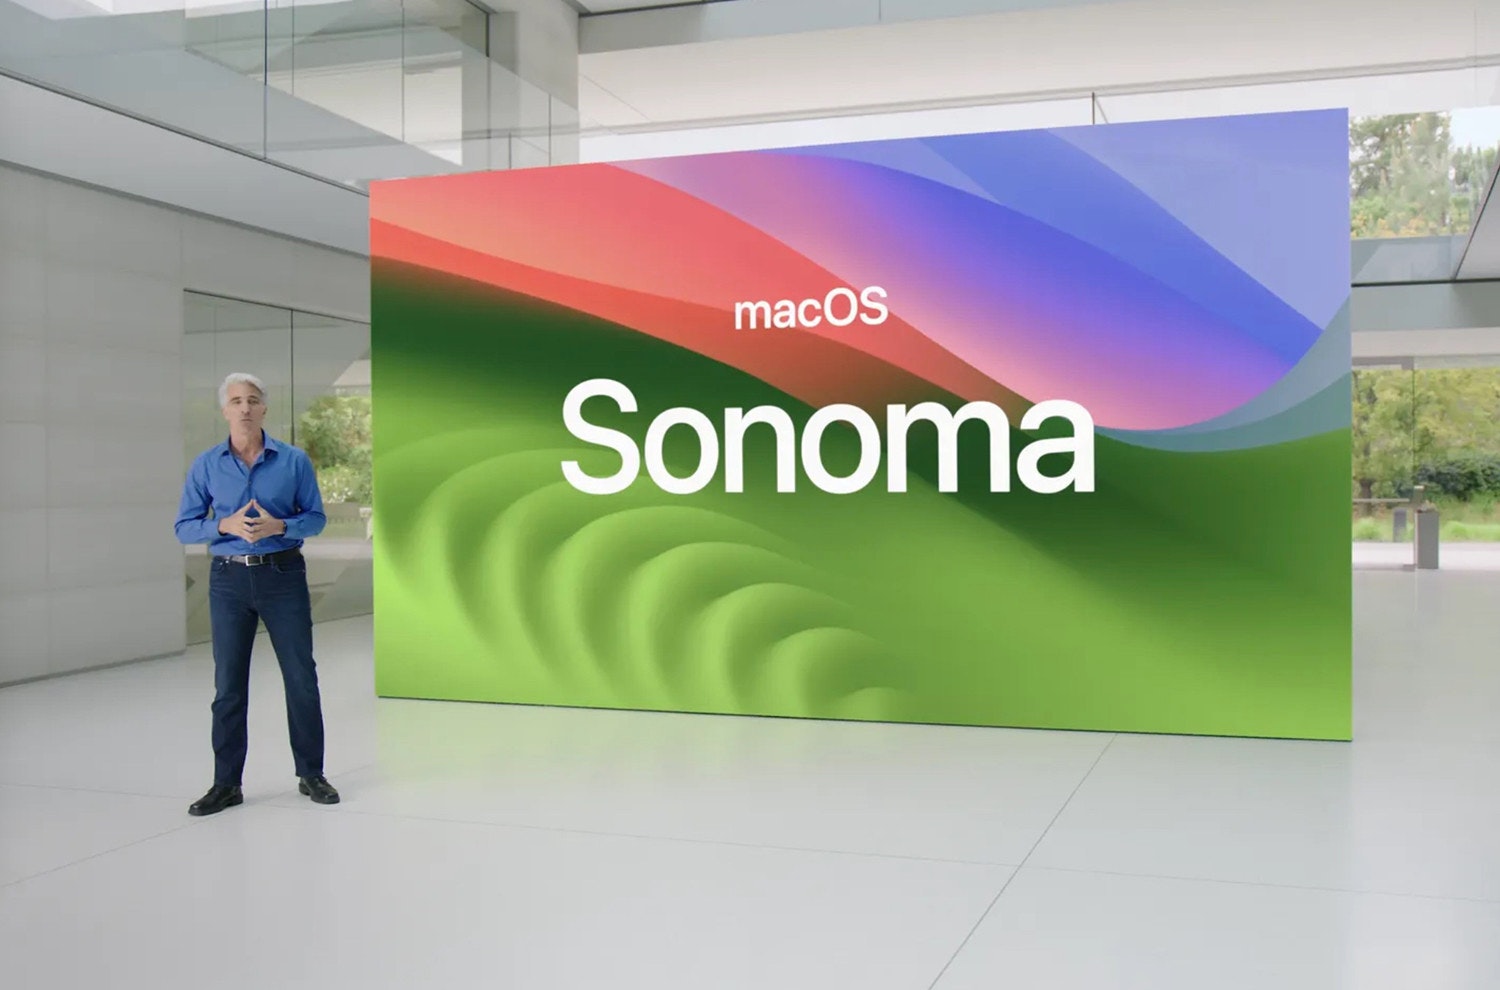 照片中提到了macOS、Sonoma，跟簽名有關，包含了展示廣告、數碼展示廣告、顯示裝置、牌、旗幟